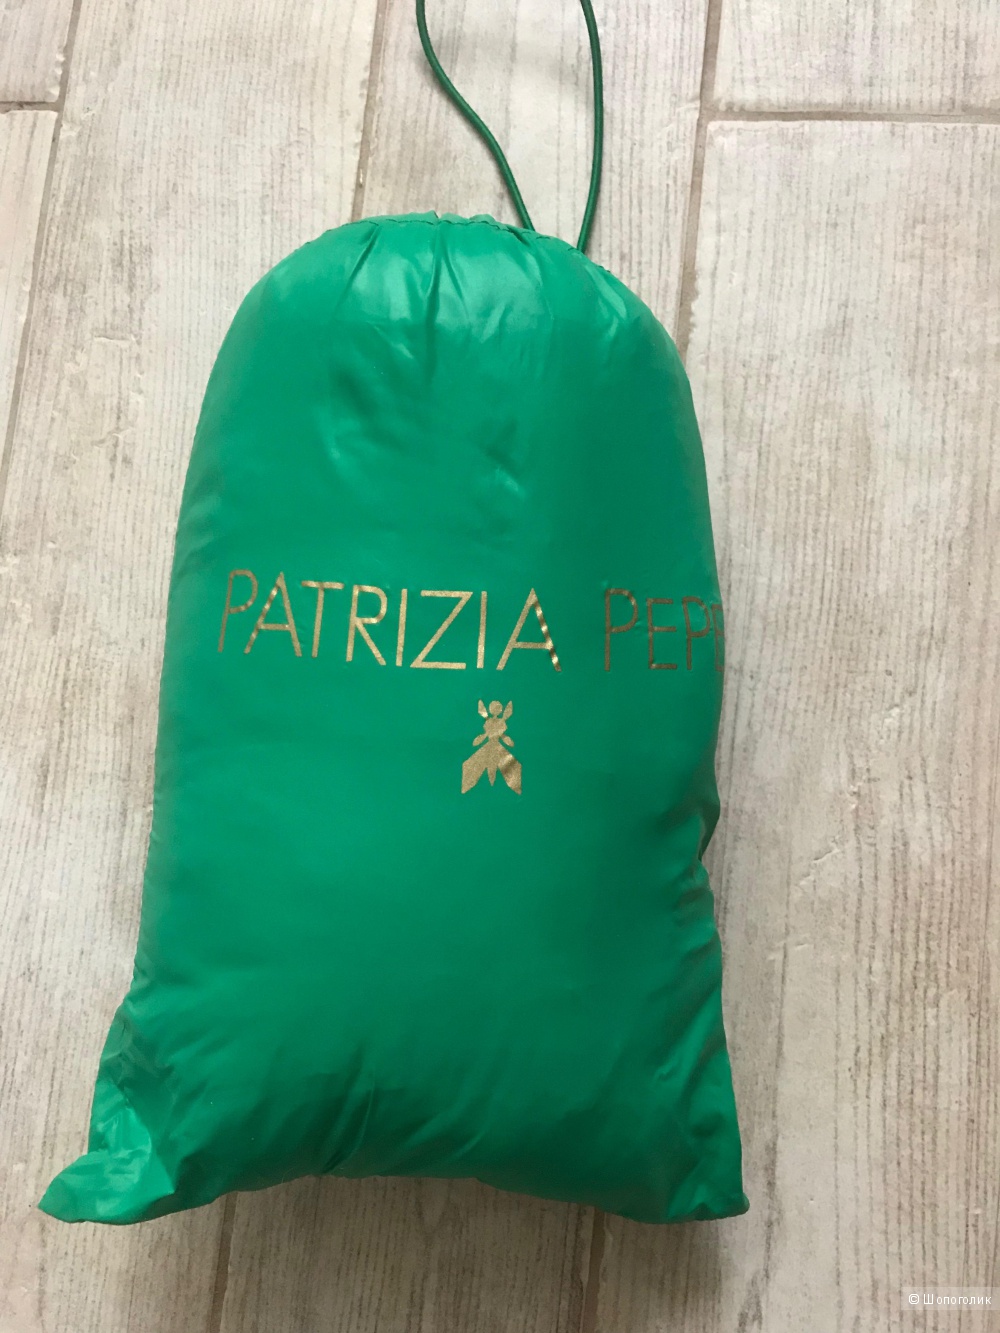 Куртка Patrizia Pepe. Размер s (42).